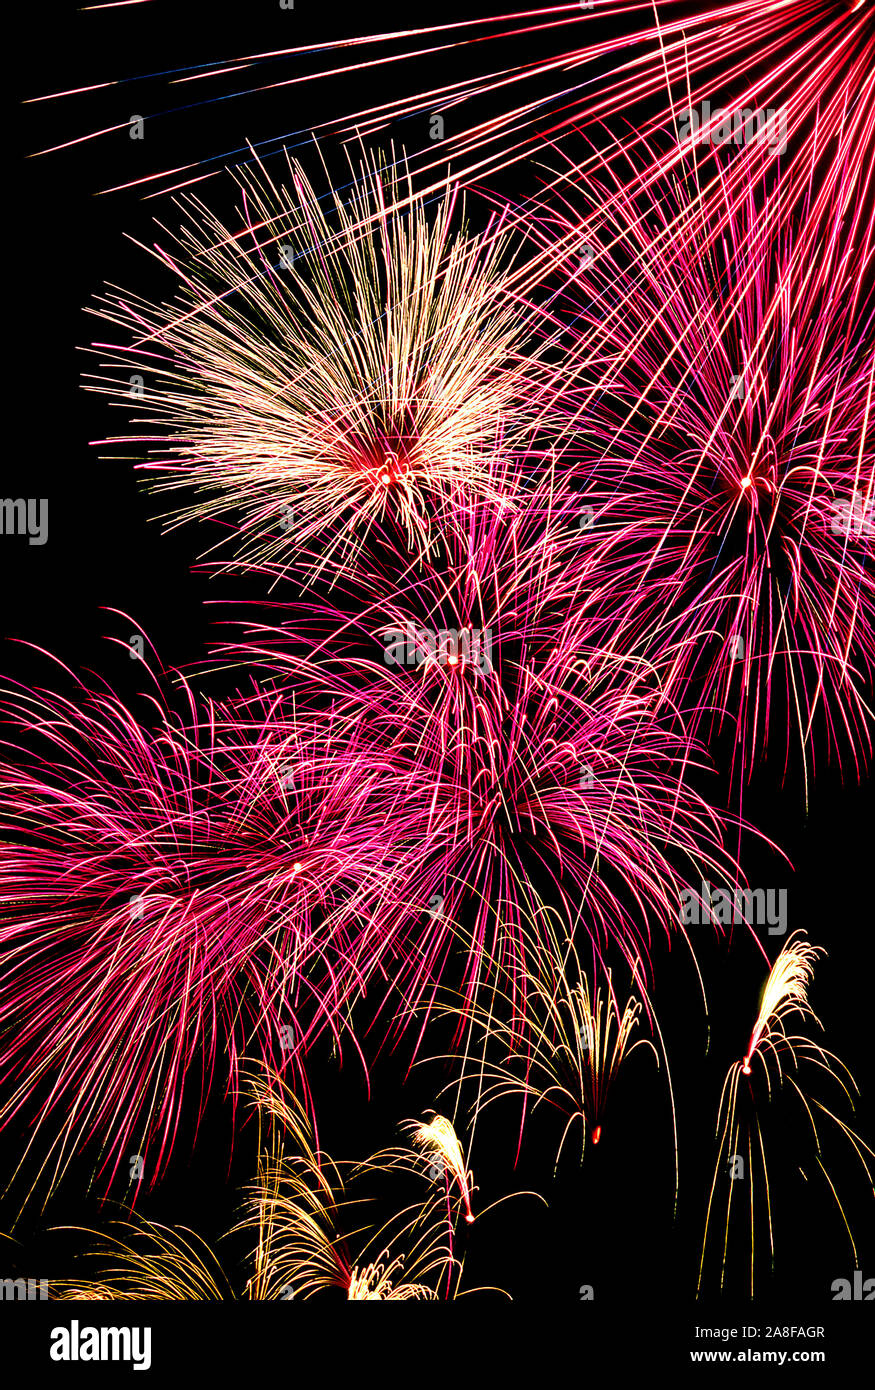 Feuerwerk, Happy New Year, Frohes Neues Jahr, Stock Photo